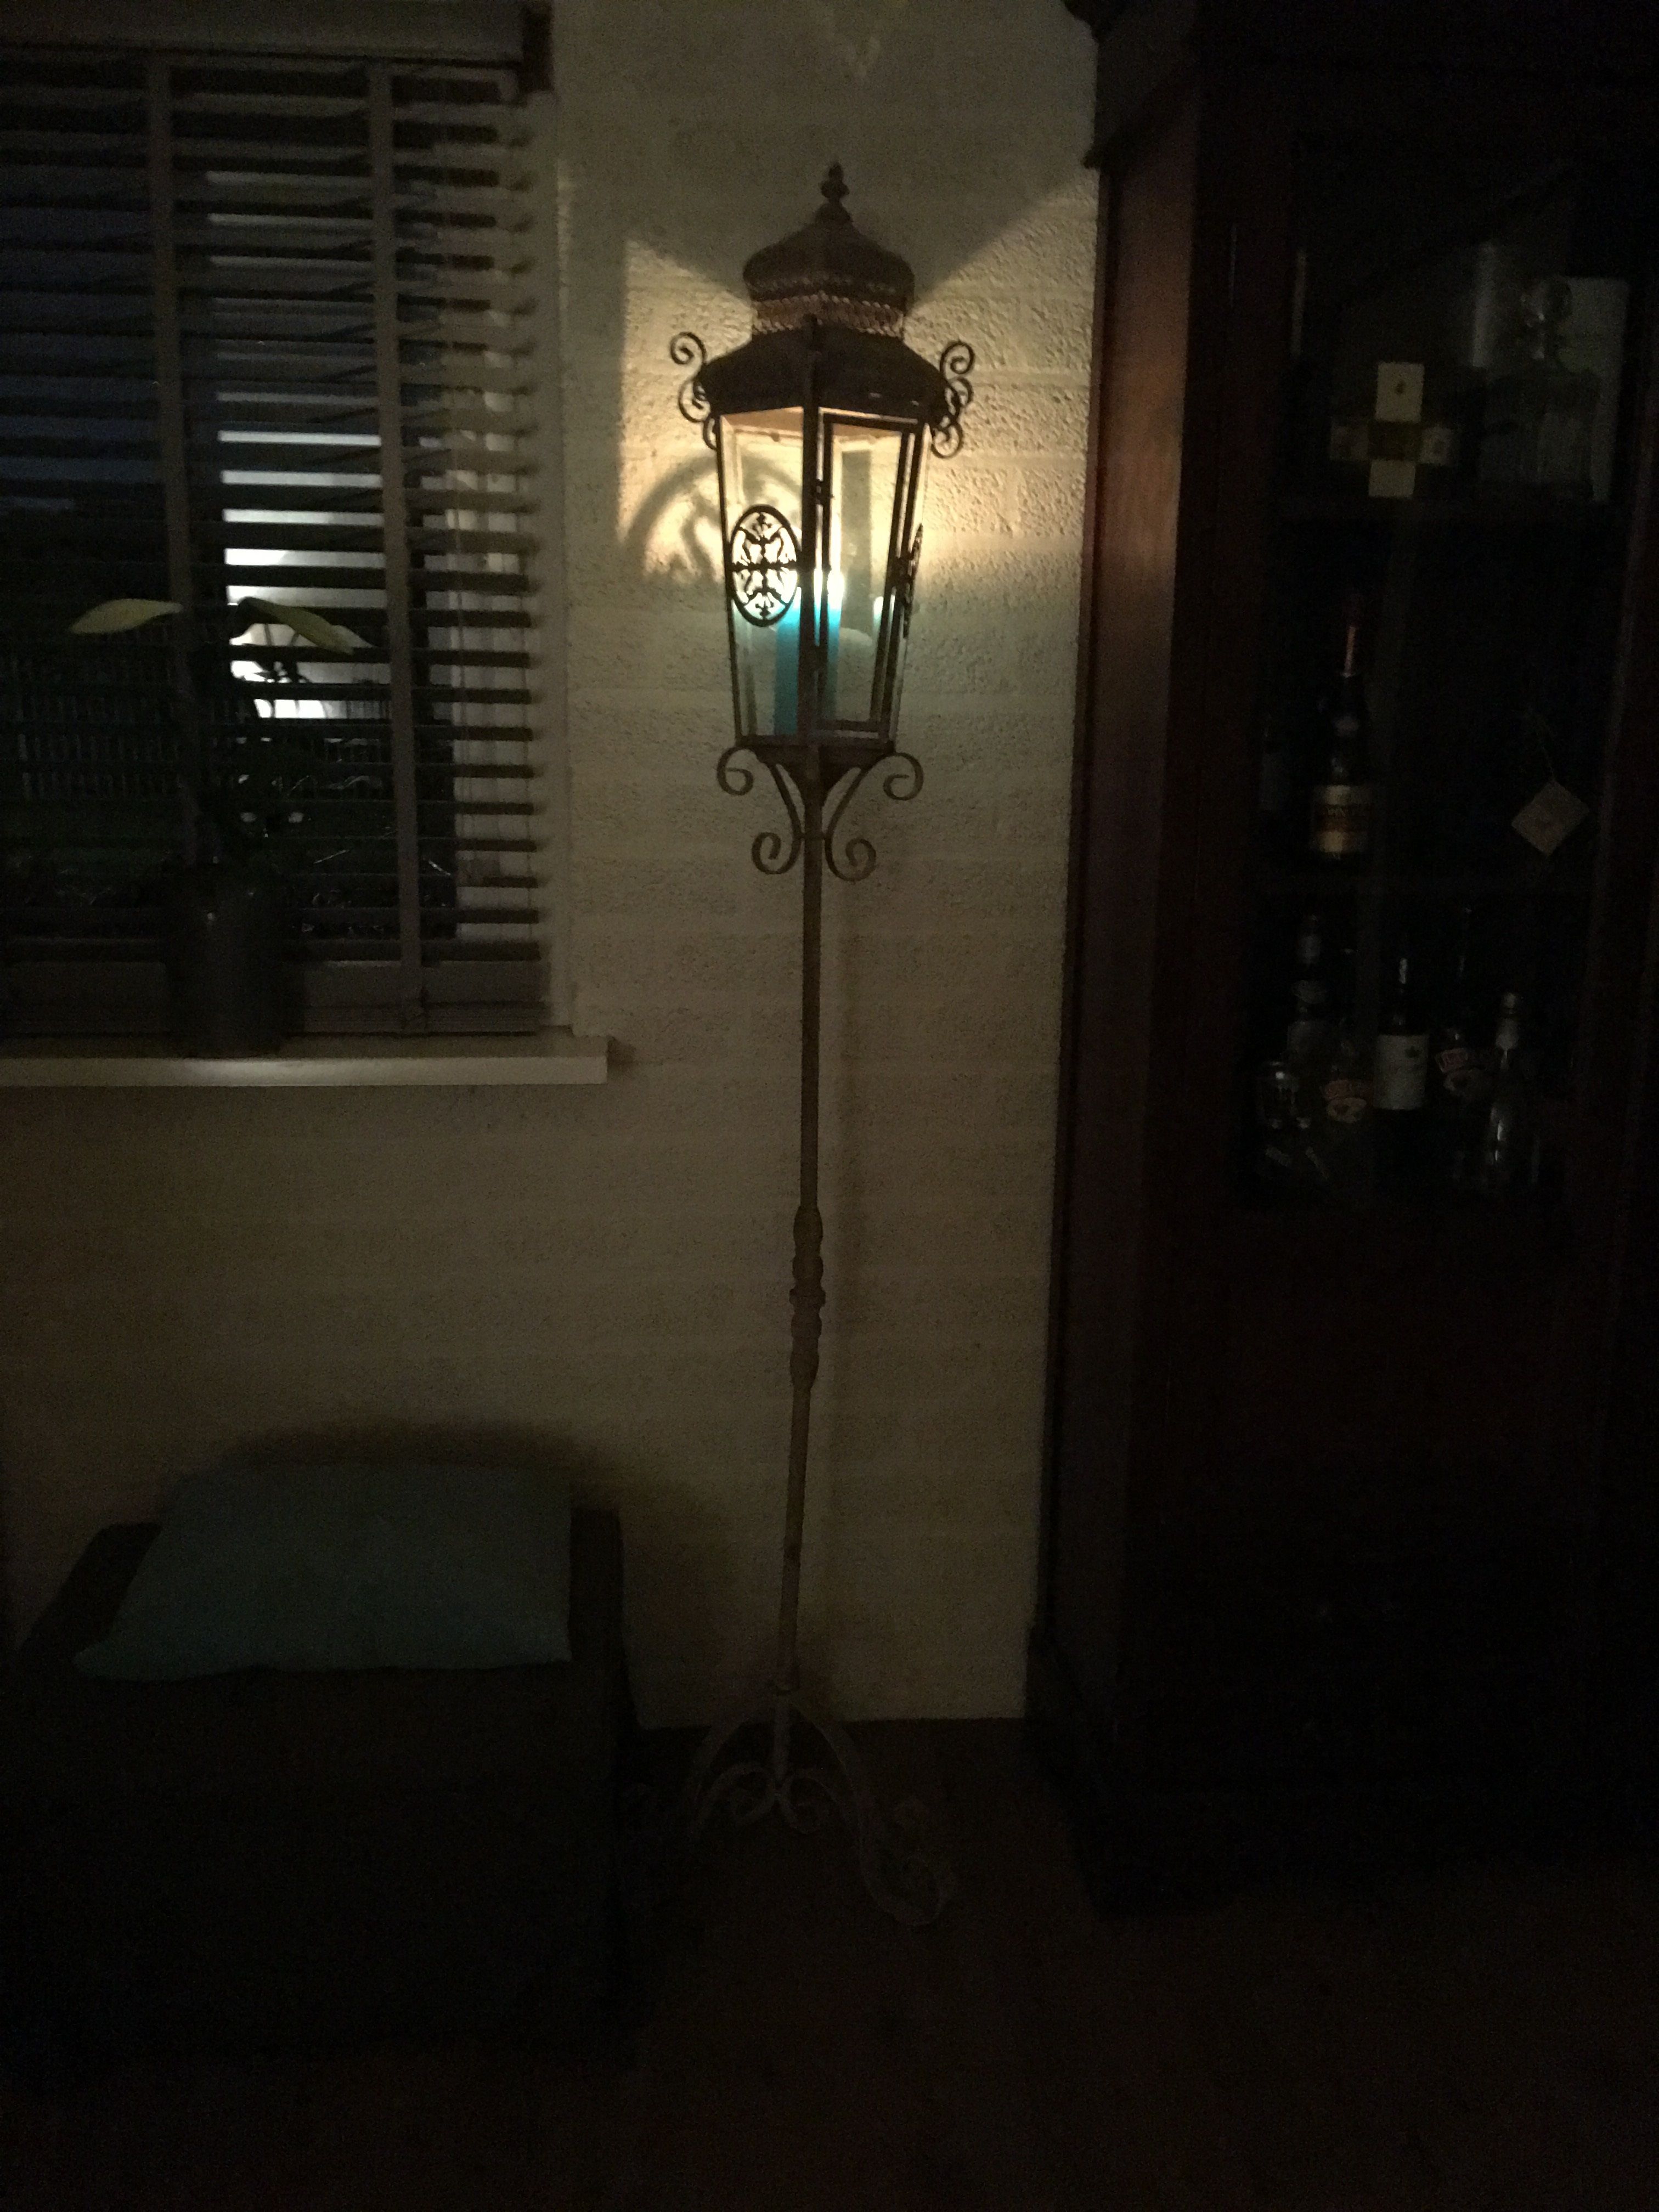 Lantaarn, lantaarn gemaakt van metaal 2.00 m